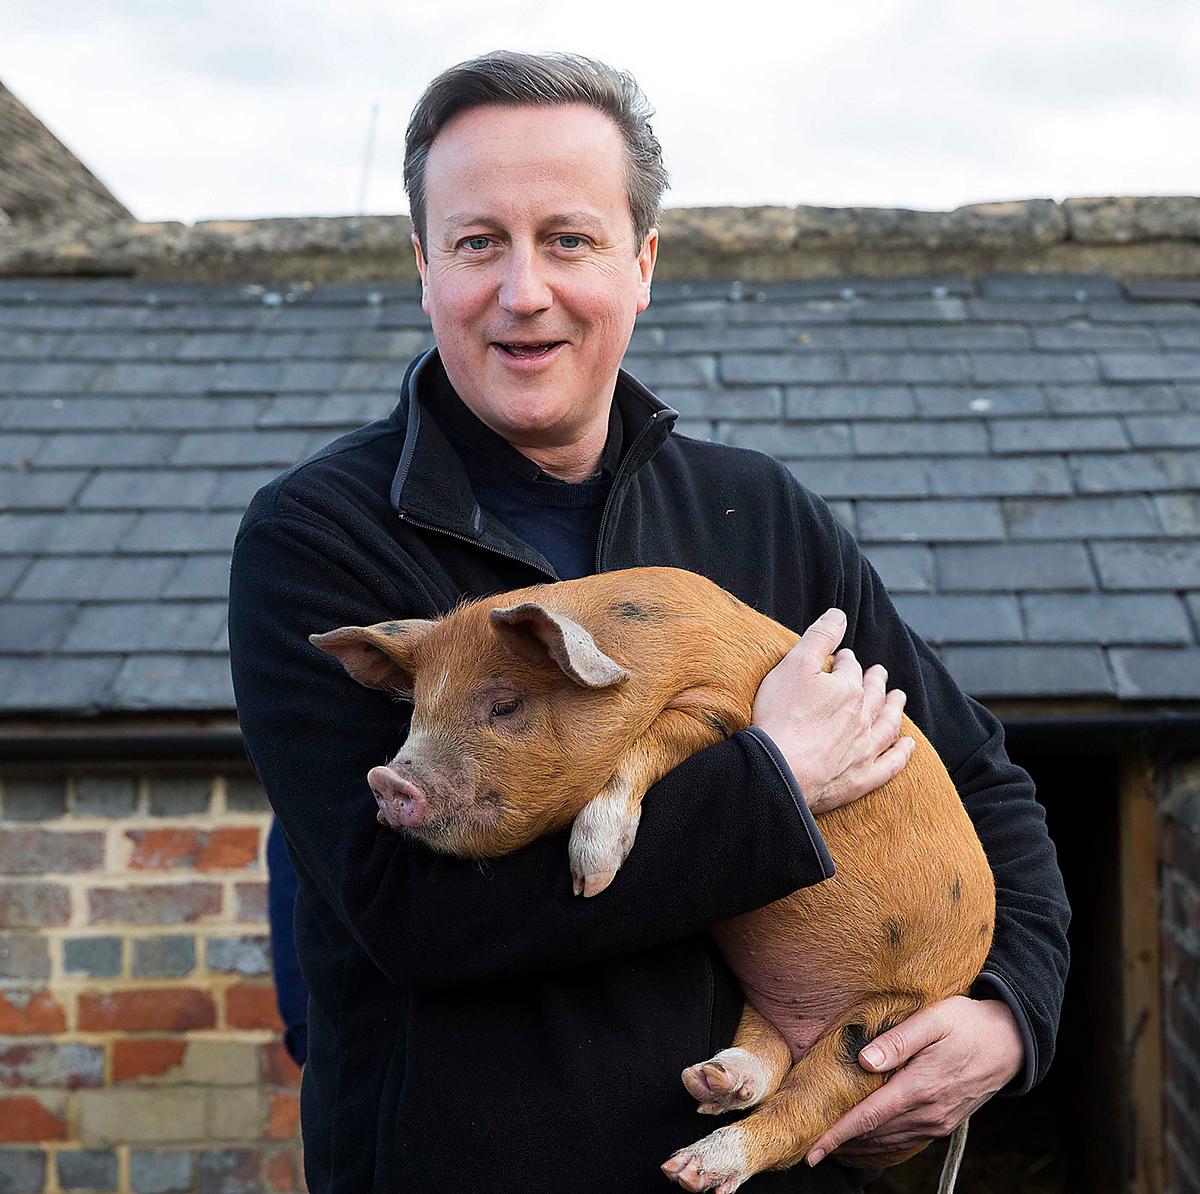 ERKÄNDE TILL SIST Till sist tvingades den brittiske premiärministern David Cameron - som byggt en politisk karriär på att moralisera över bidragsfusk - att erkänna att han tidigare hade smitit från skatten.